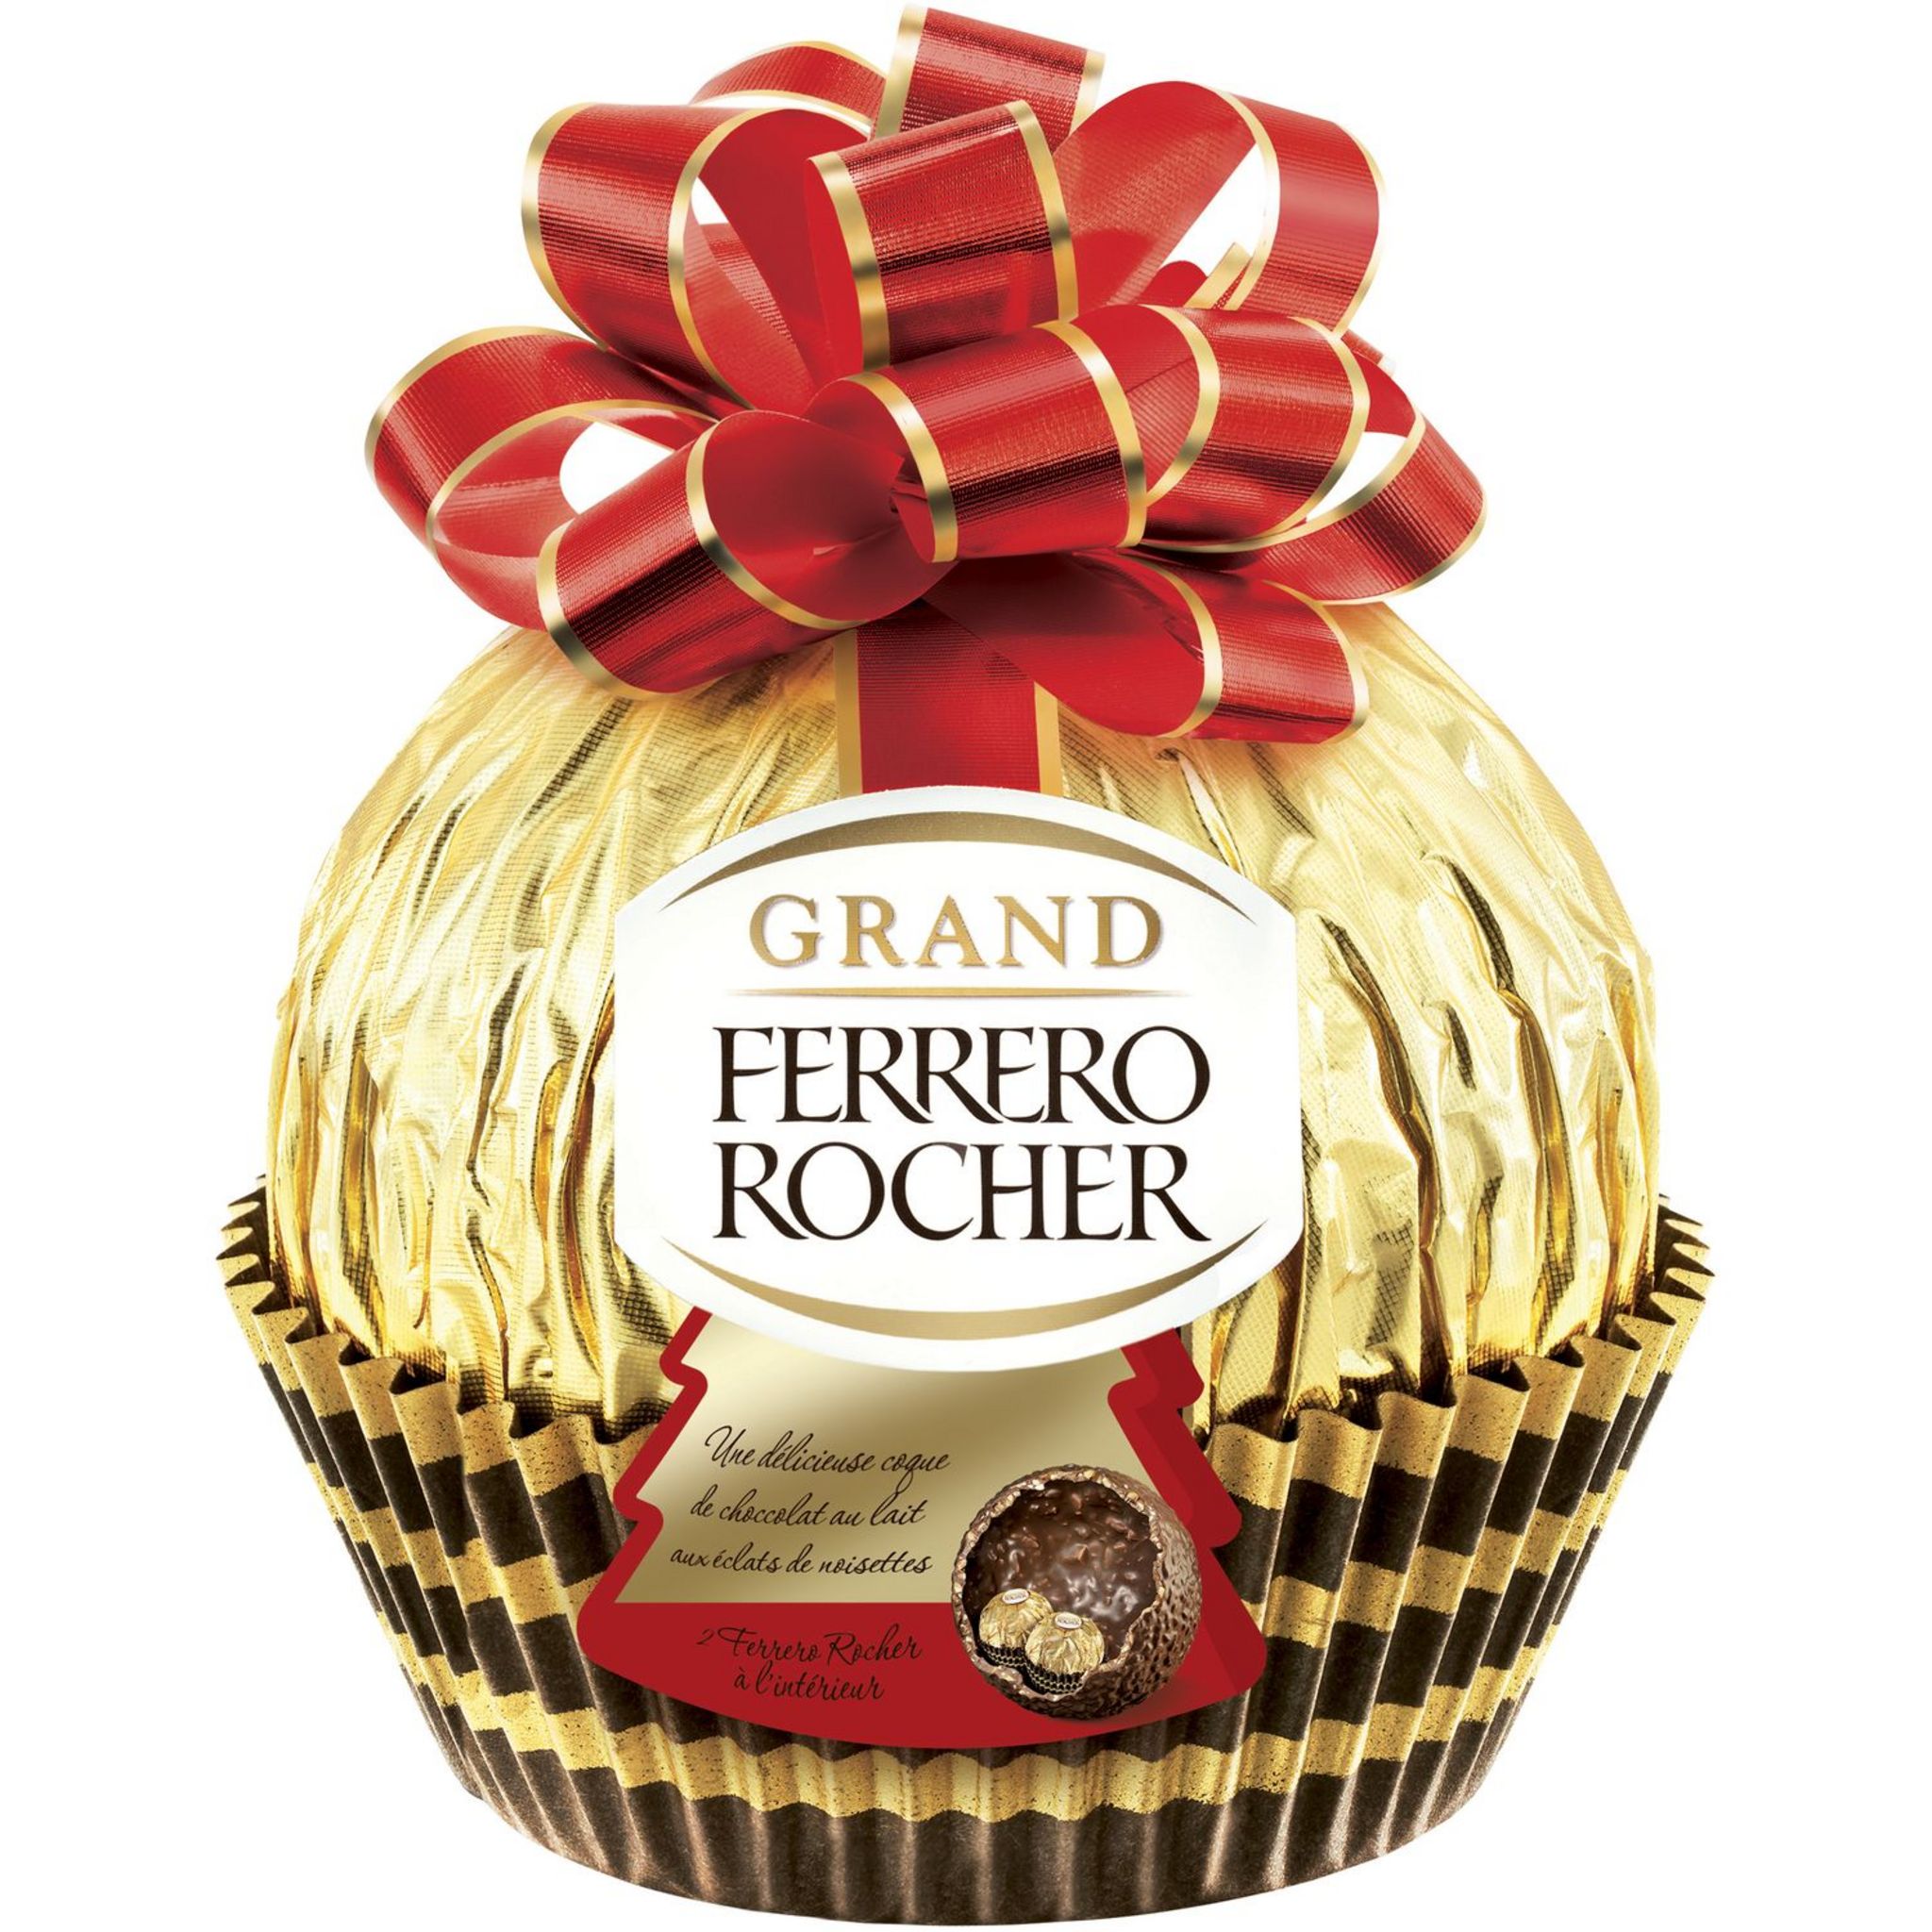 Ferrero Rocher moulage oeuf chocolat au lait avec éclats de